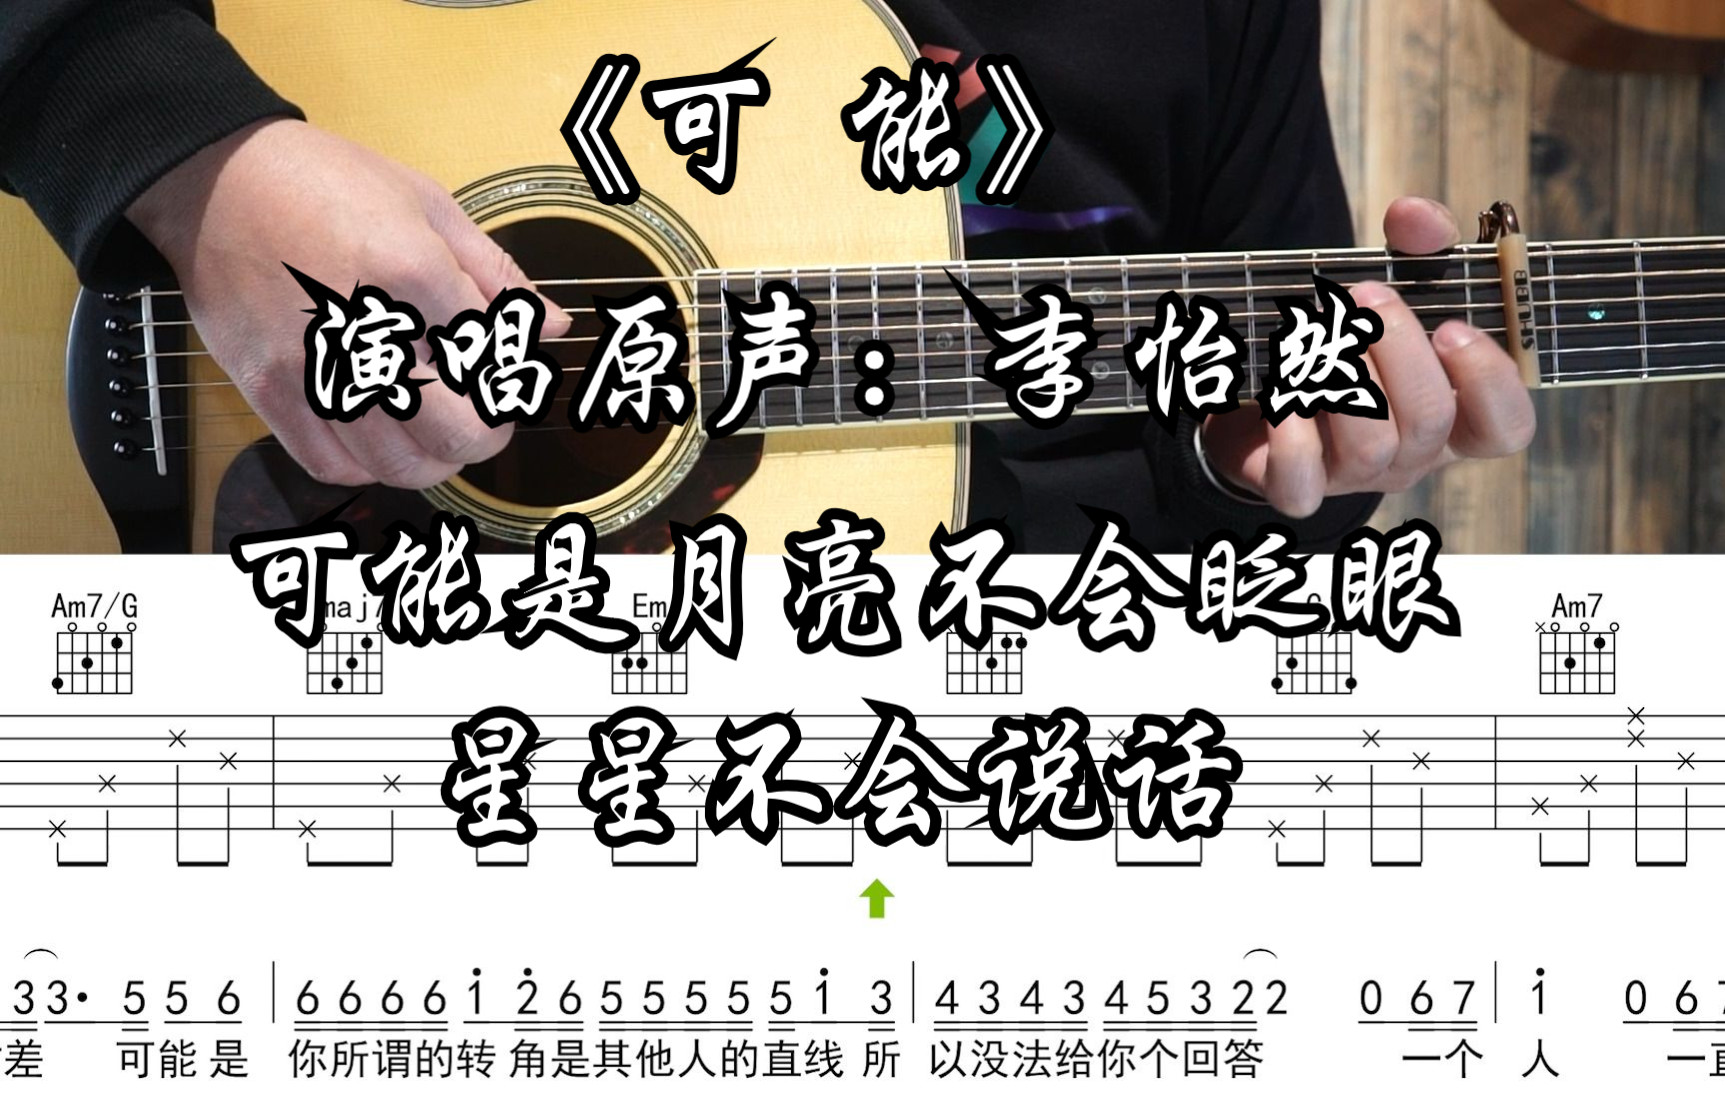 一百万个可能简易版吉他谱 - 虫虫吉他谱免费下载 - 虫虫乐谱